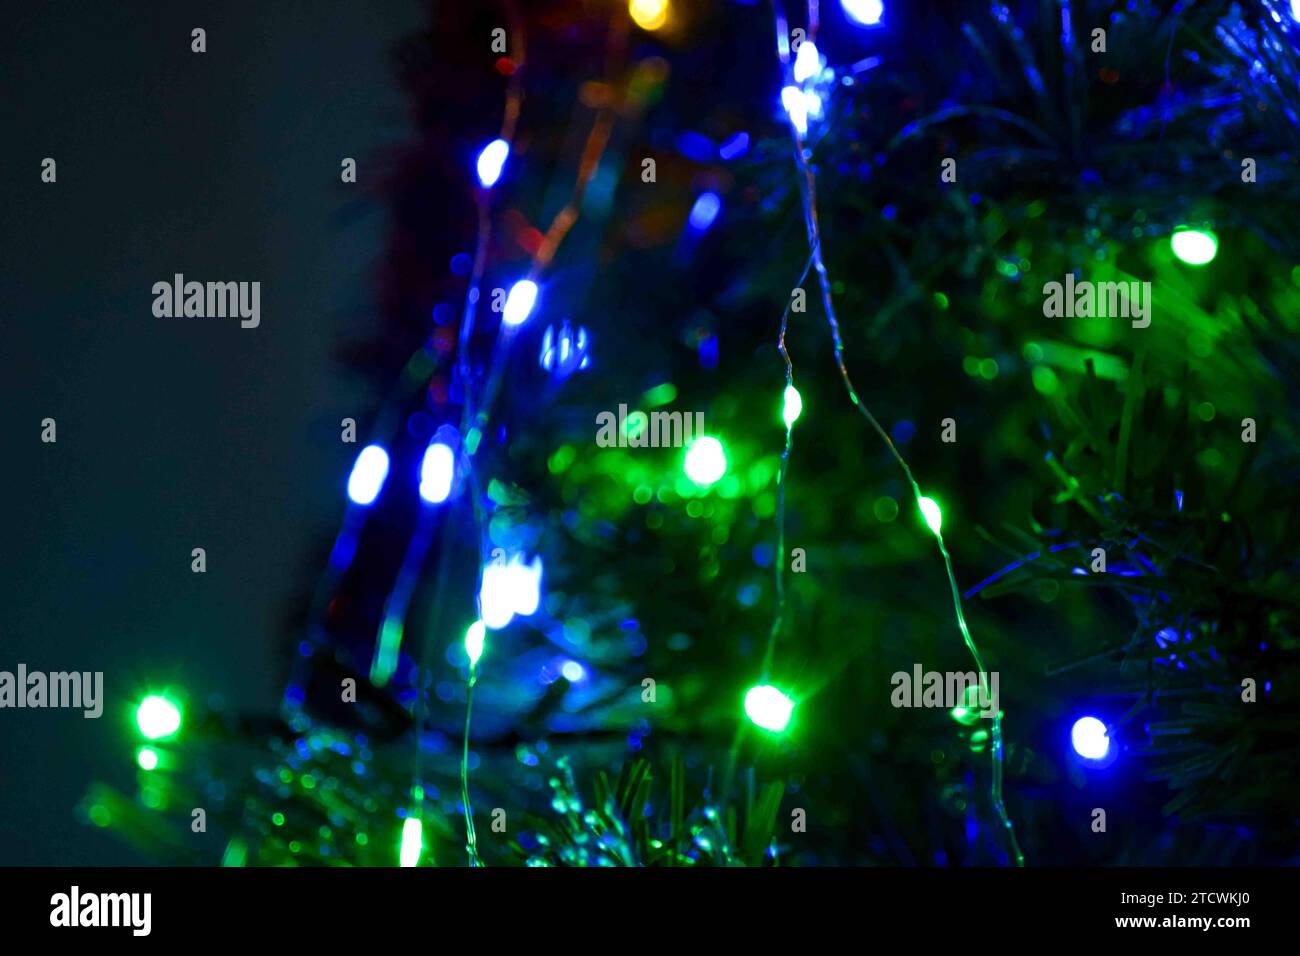 Eine Reihe von weihnachtslichtern, Ornamenten und Lametta auf einem Baum. Alle ausgewählten Bilder wurden mit Lightroom Classic bearbeitet. Stockfoto